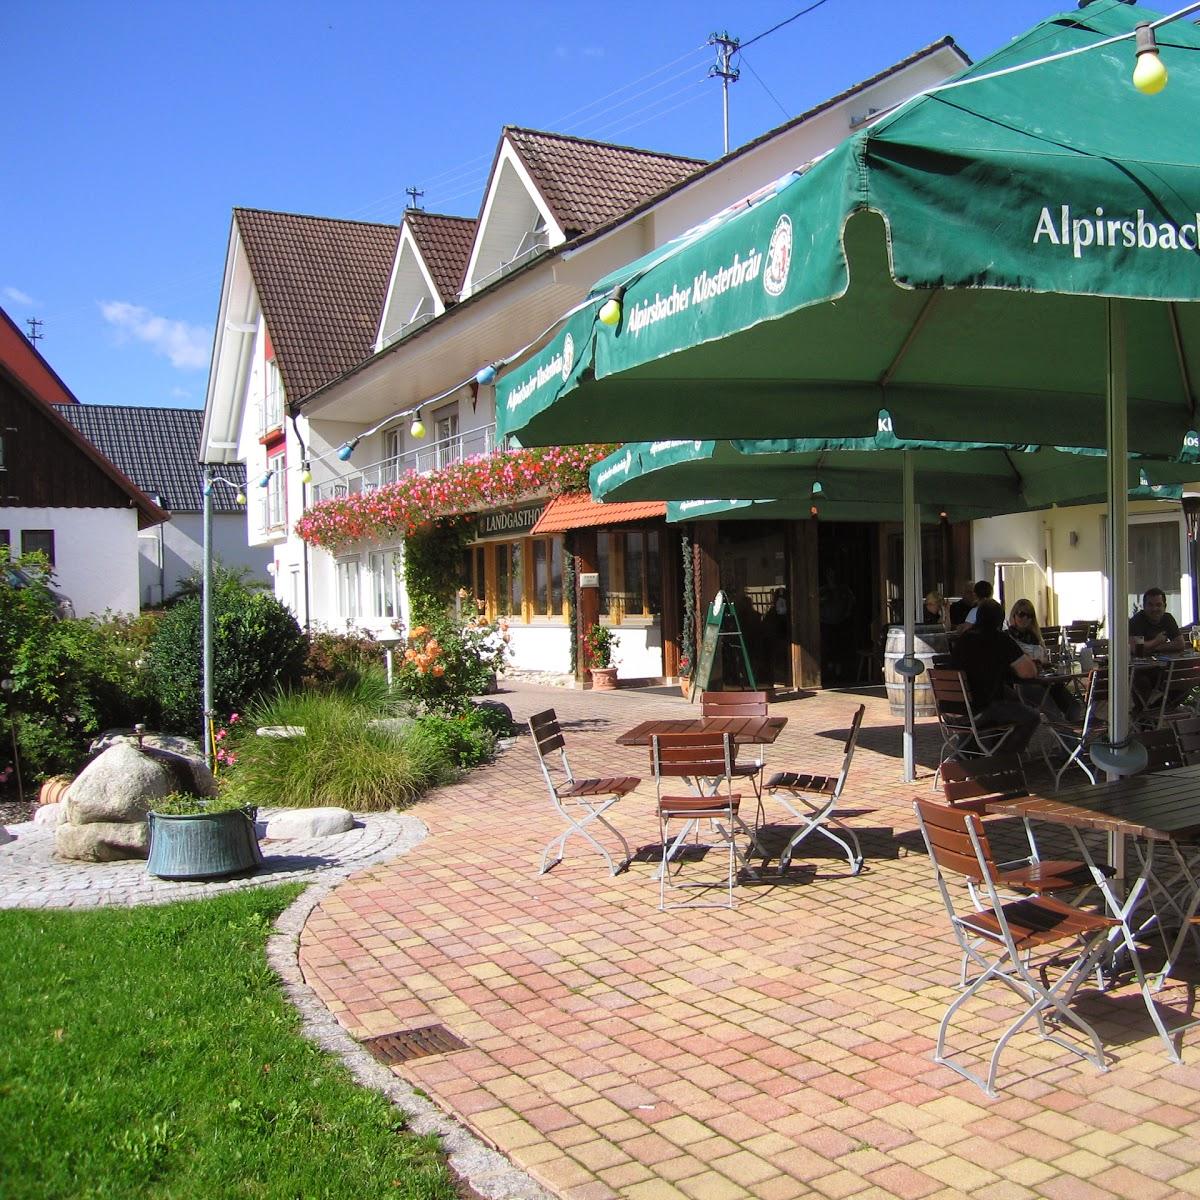 Restaurant "Landhotel zur Linde" in Loßburg